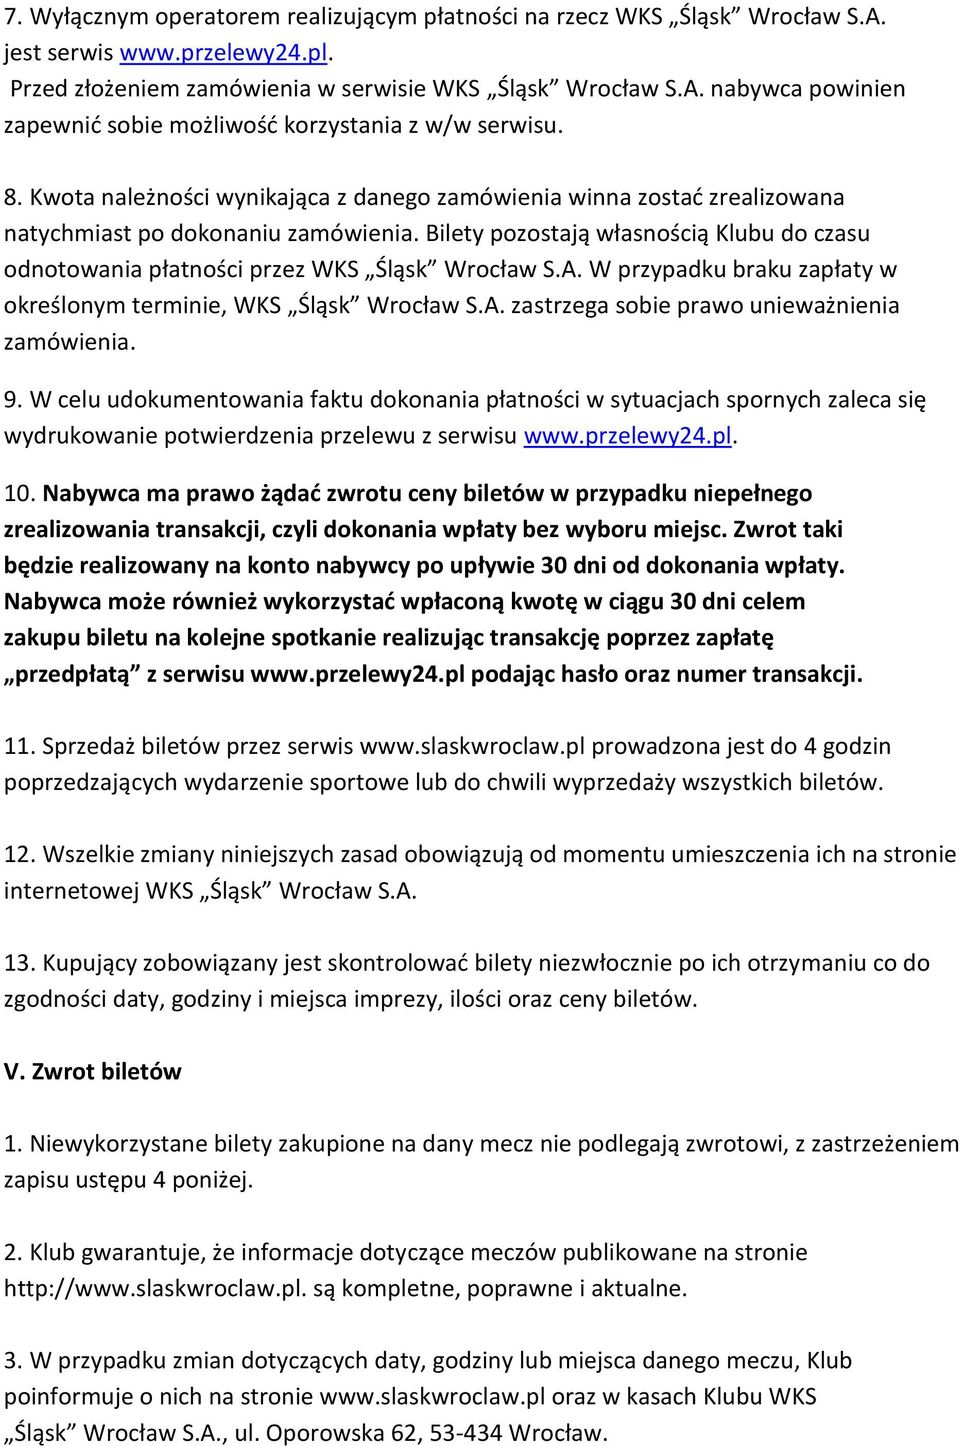 Bilety pozostają własnością Klubu do czasu odnotowania płatności przez WKS Śląsk Wrocław S.A. W przypadku braku zapłaty w określonym terminie, WKS Śląsk Wrocław S.A. zastrzega sobie prawo unieważnienia zamówienia.